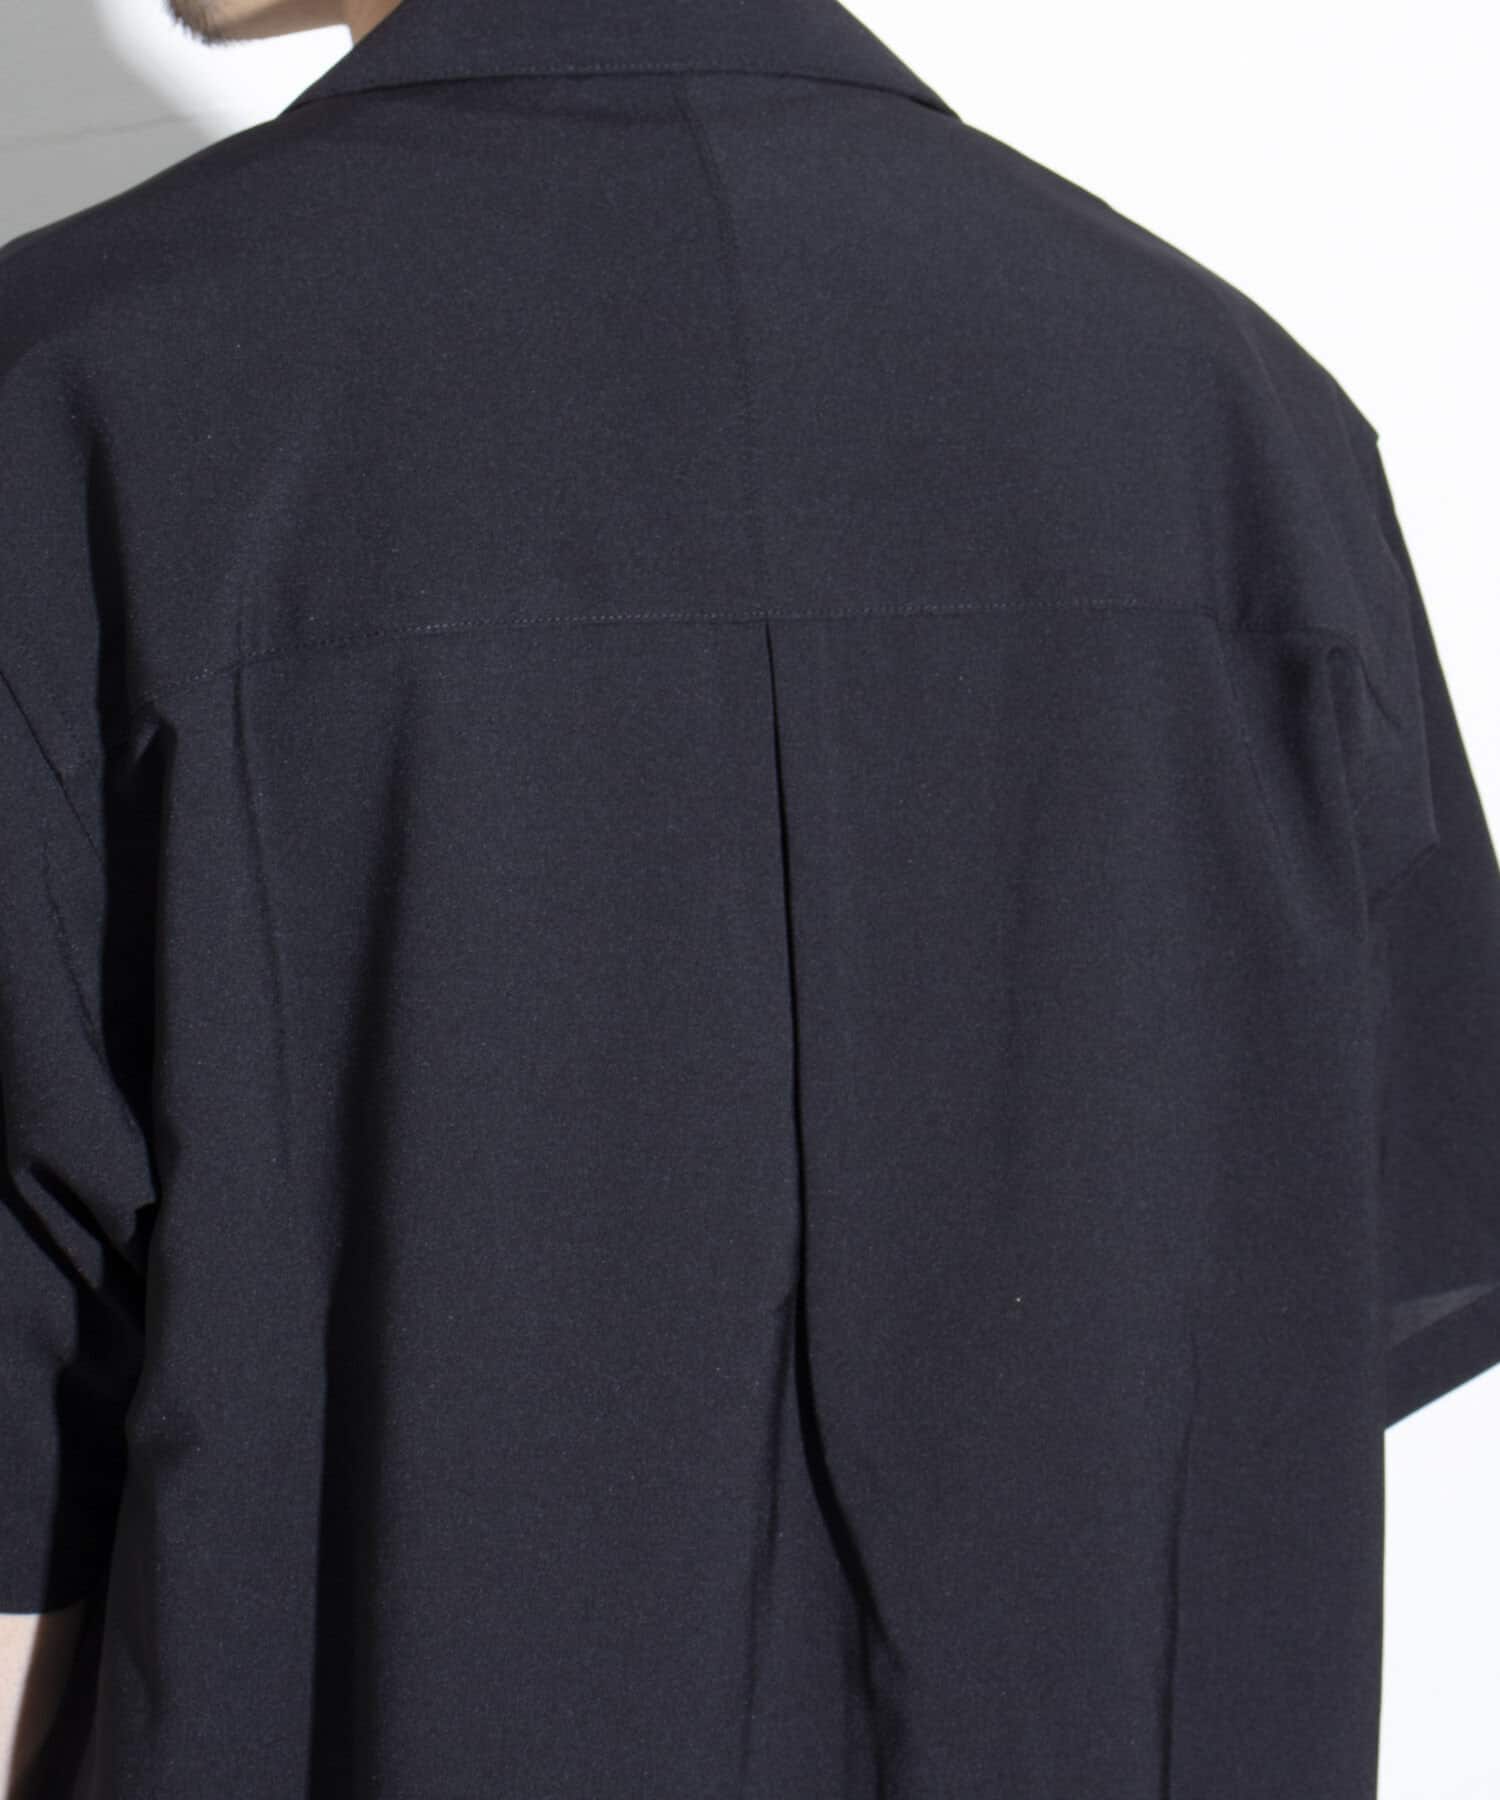 FREDY & GLOSTER(フレディ アンド グロスター) 【GLOSTER】COOLMAX 半袖オープンカラーシャツ 防シワ